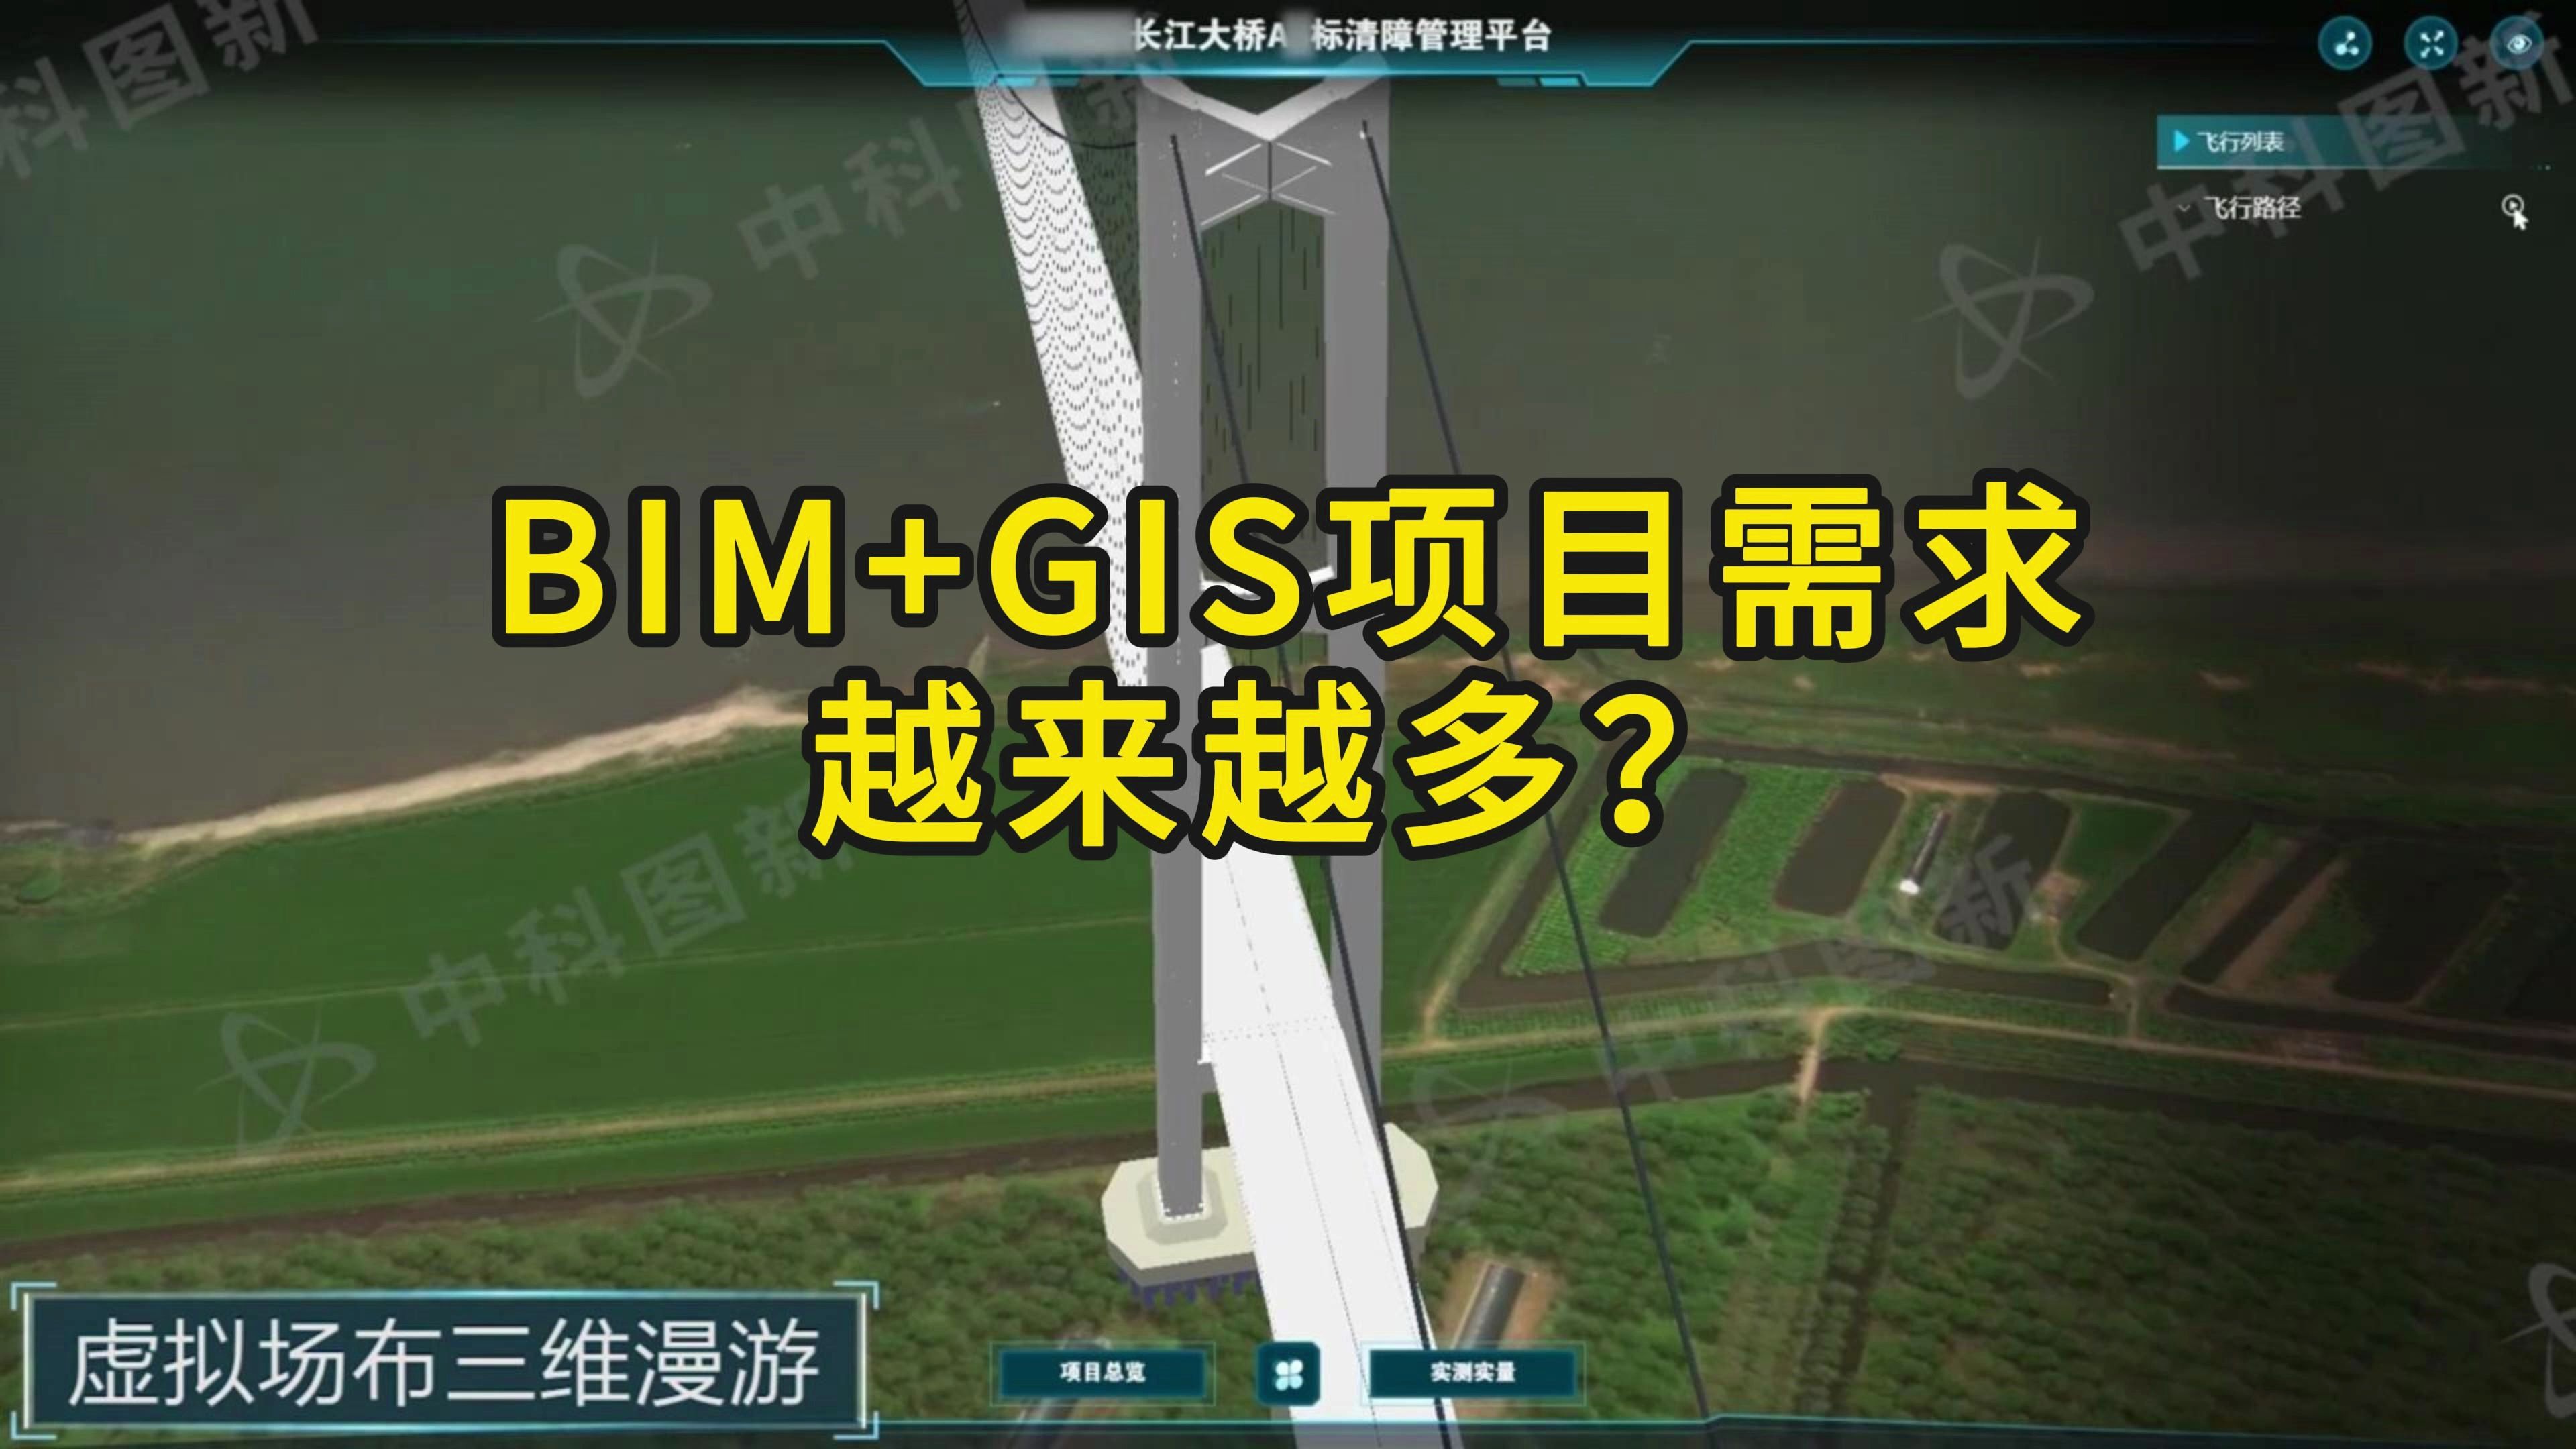 为什么越来越多项目需要BIM+GIS？BIM+GIS有什么应用价值？